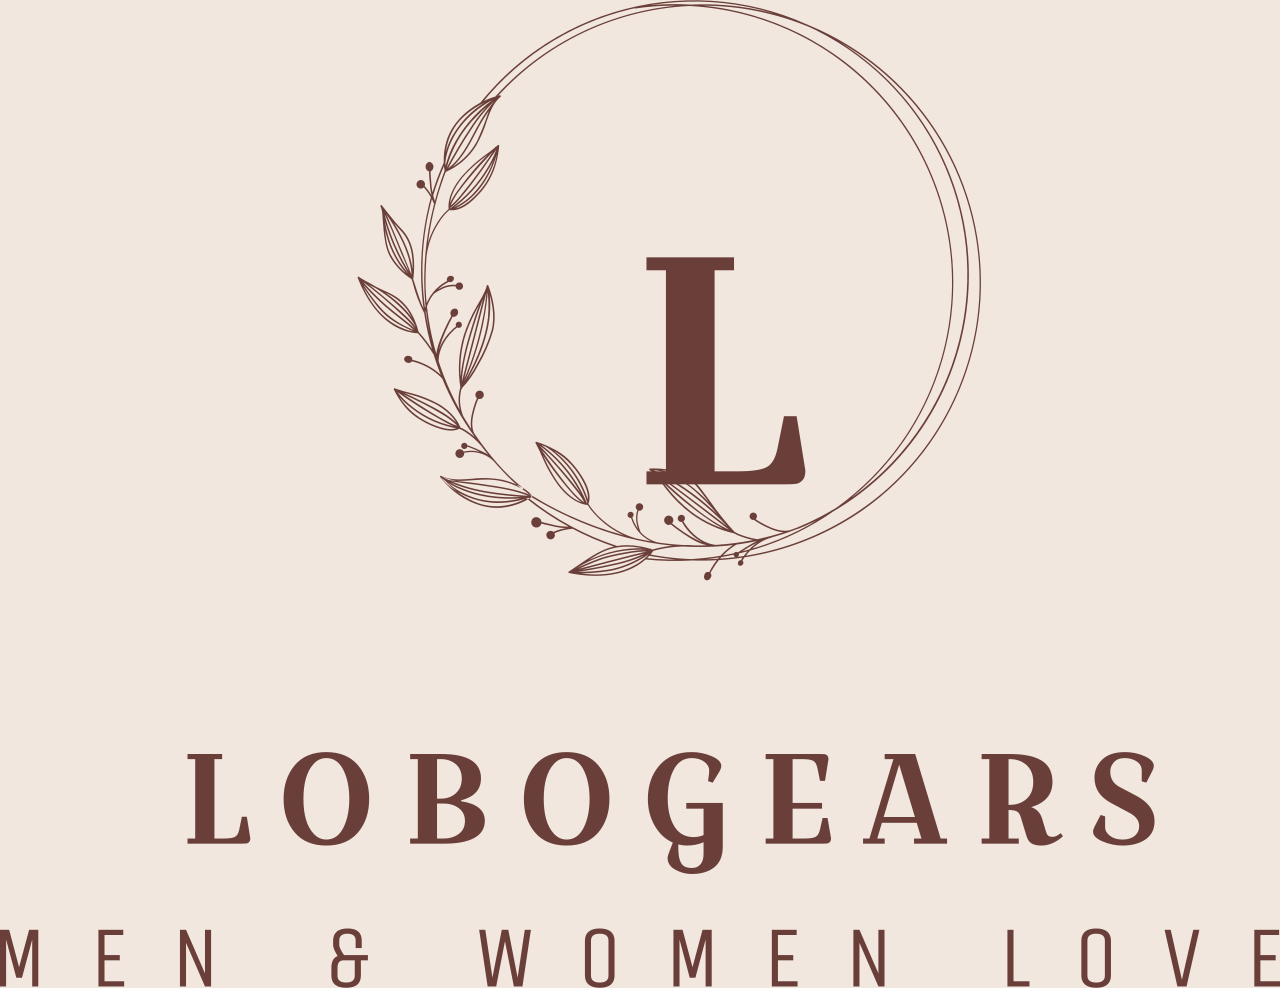 LOBOGEARS's web page